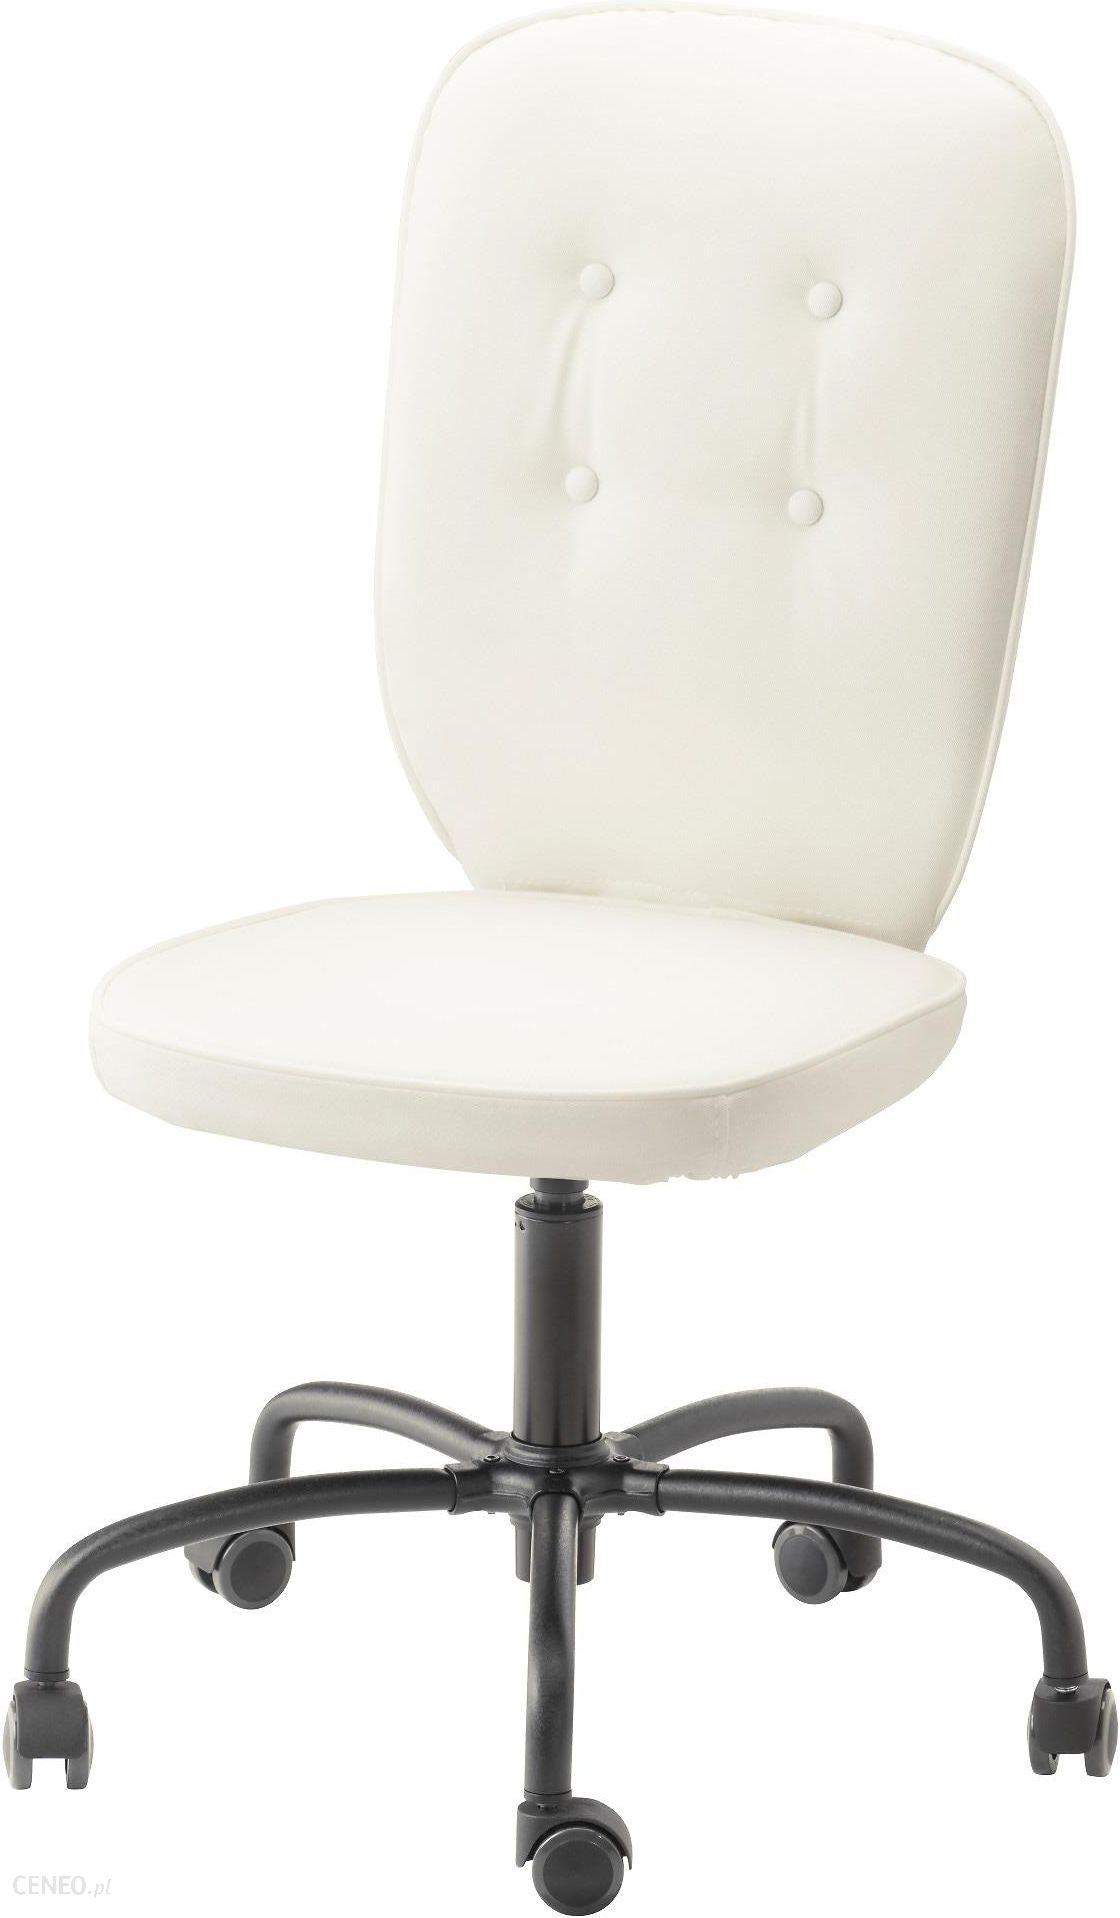 Ikea Lillhojden Krzeslo Obrotowe Blekinge Bialy 40238712 Opinie I Atrakcyjne Ceny Na Ceneo Pl